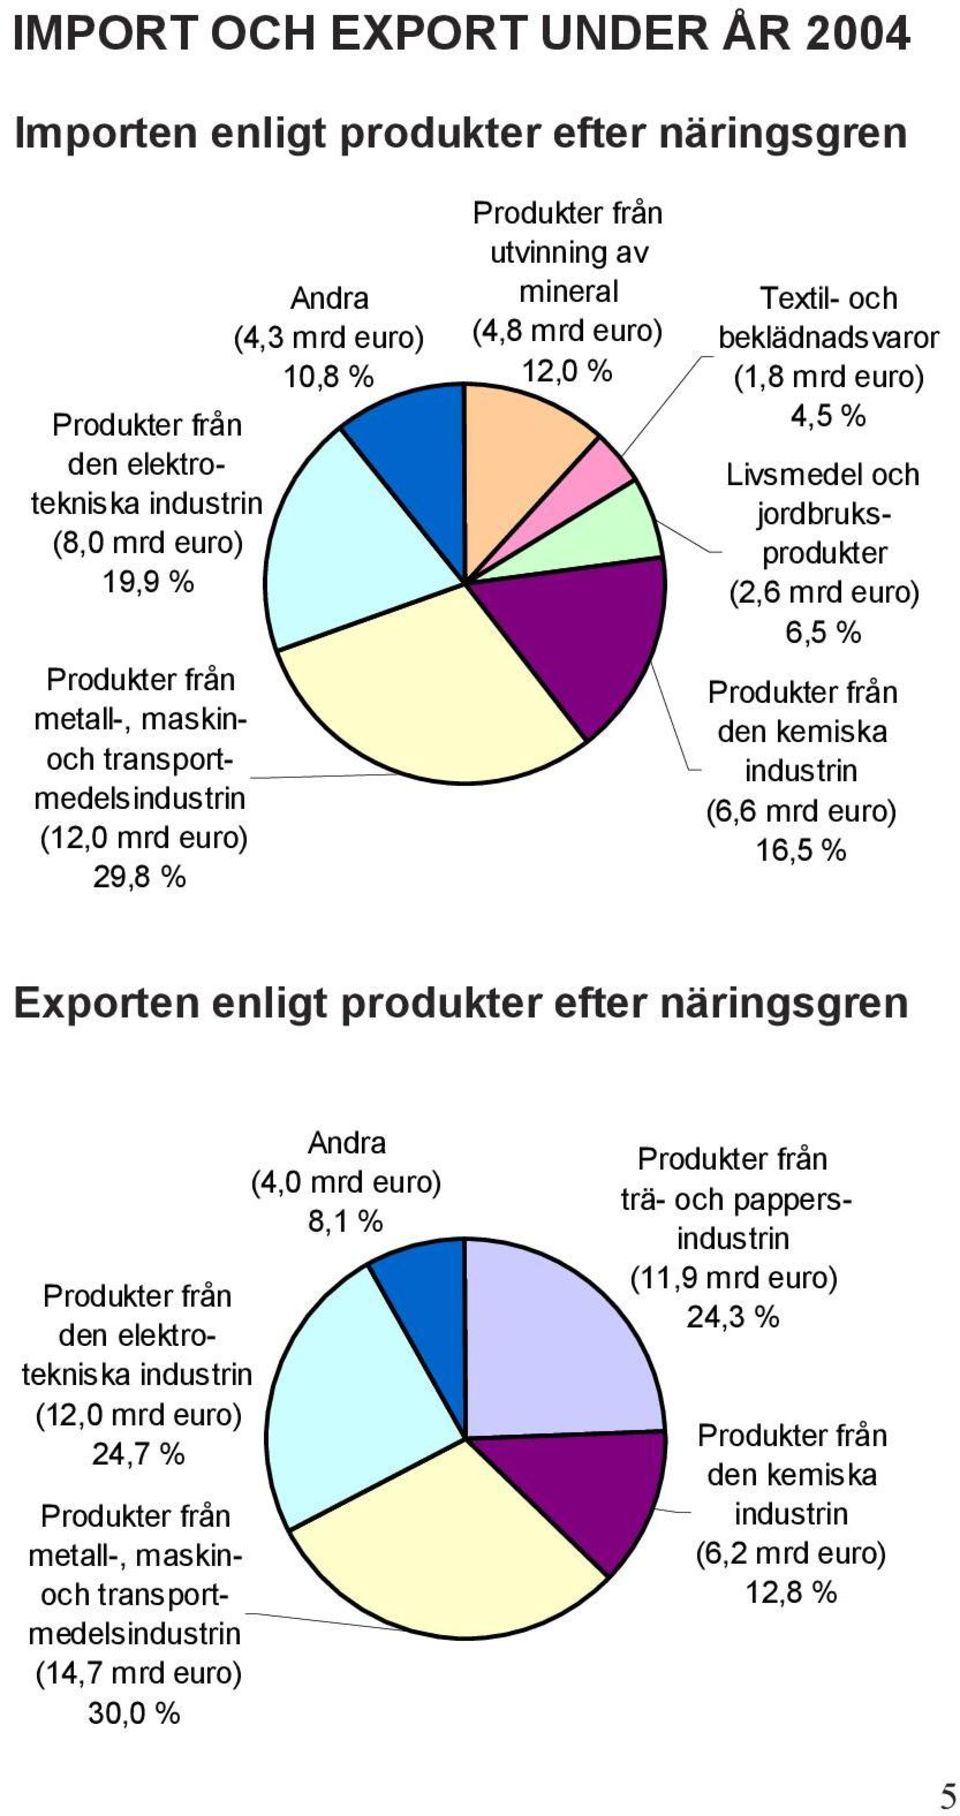 jordbruksprodukter (2,6 mrd euro) 6,5 % Produkter från den kemiska industrin (6,6 mrd euro) 16,5 % Exporten enligt produkter efter näringsgren Produkter från den elektrotekniska industrin (12,0 mrd